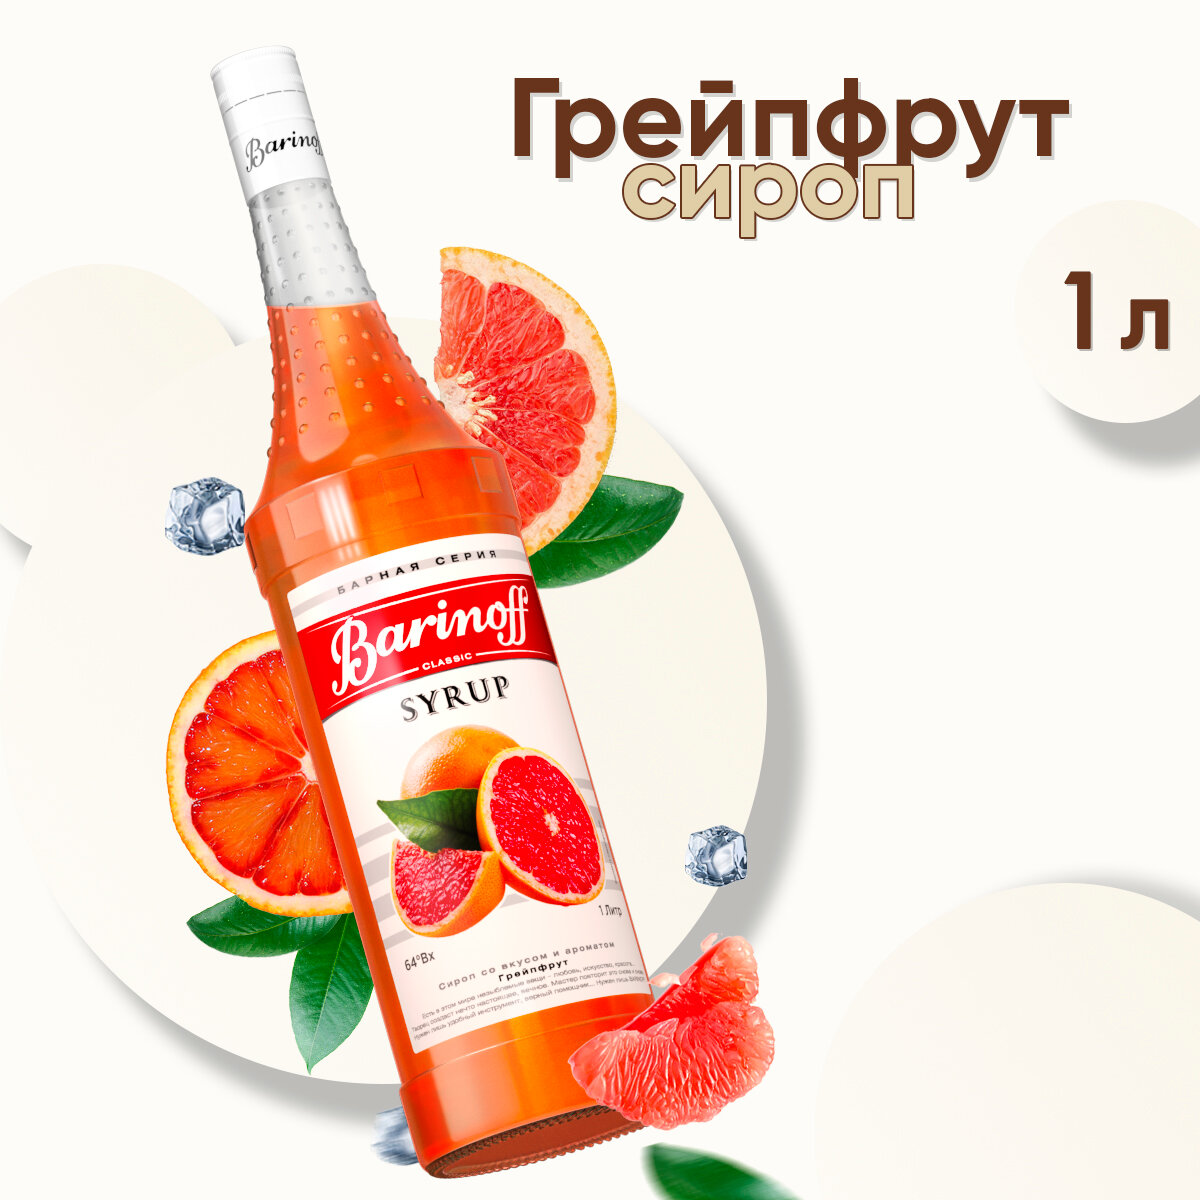 Сироп Barinoff Грейпфрут (для кофе, коктейлей, десертов, лимонада и мороженого), 1л